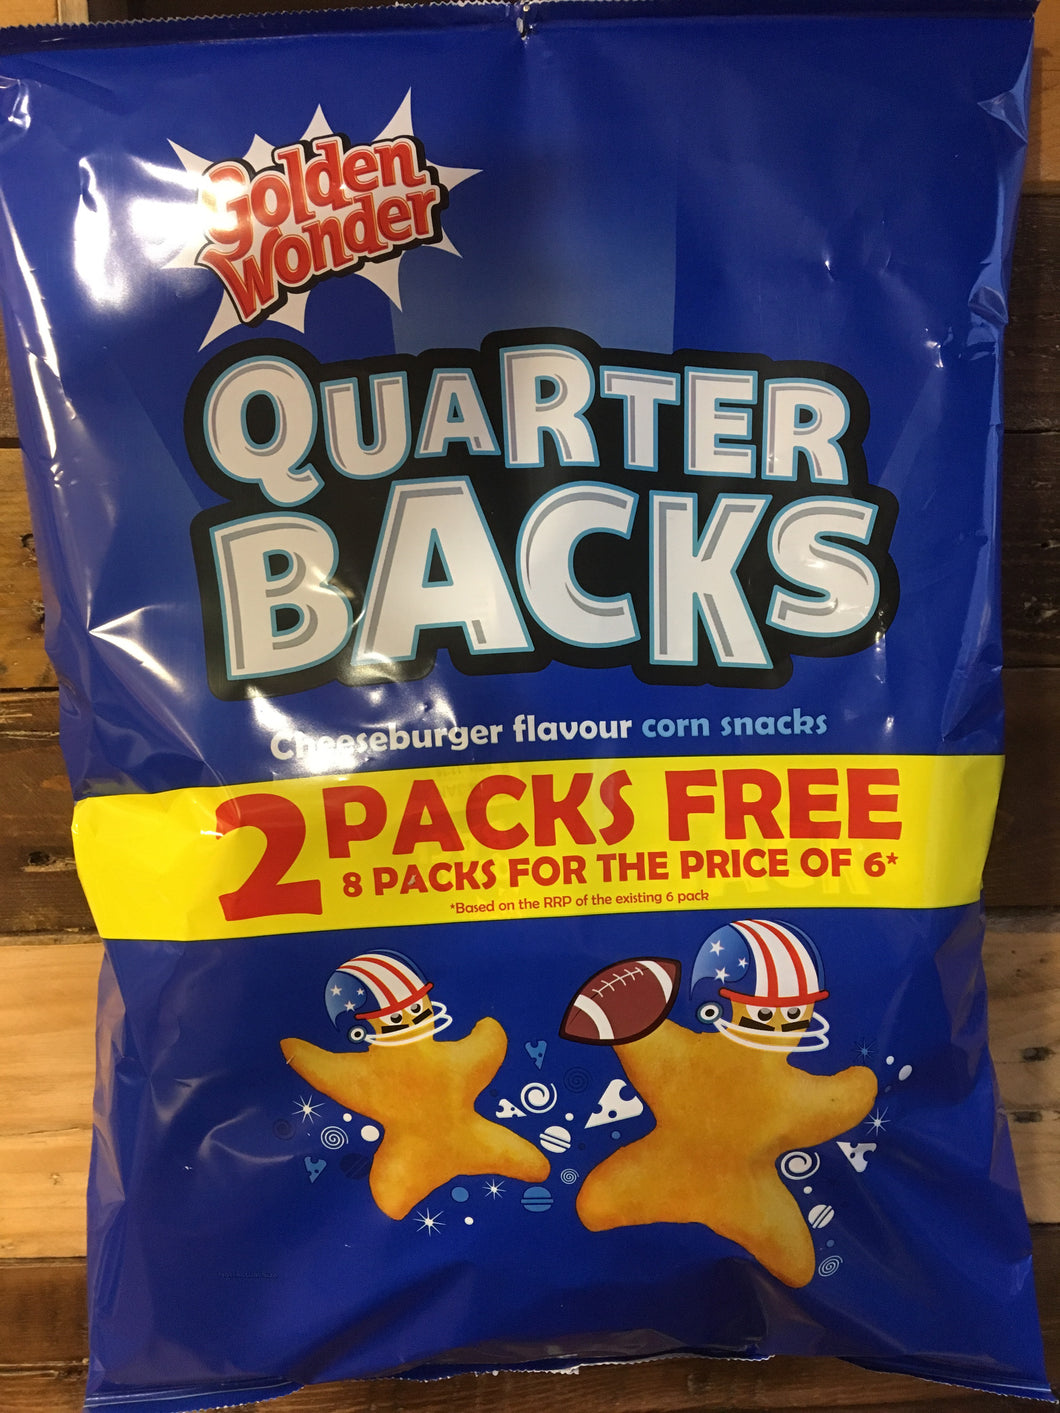 Golden Wonder Quarter Backs Cheeseburger Flavour Corn Snacks 8 Pack (8x16g)